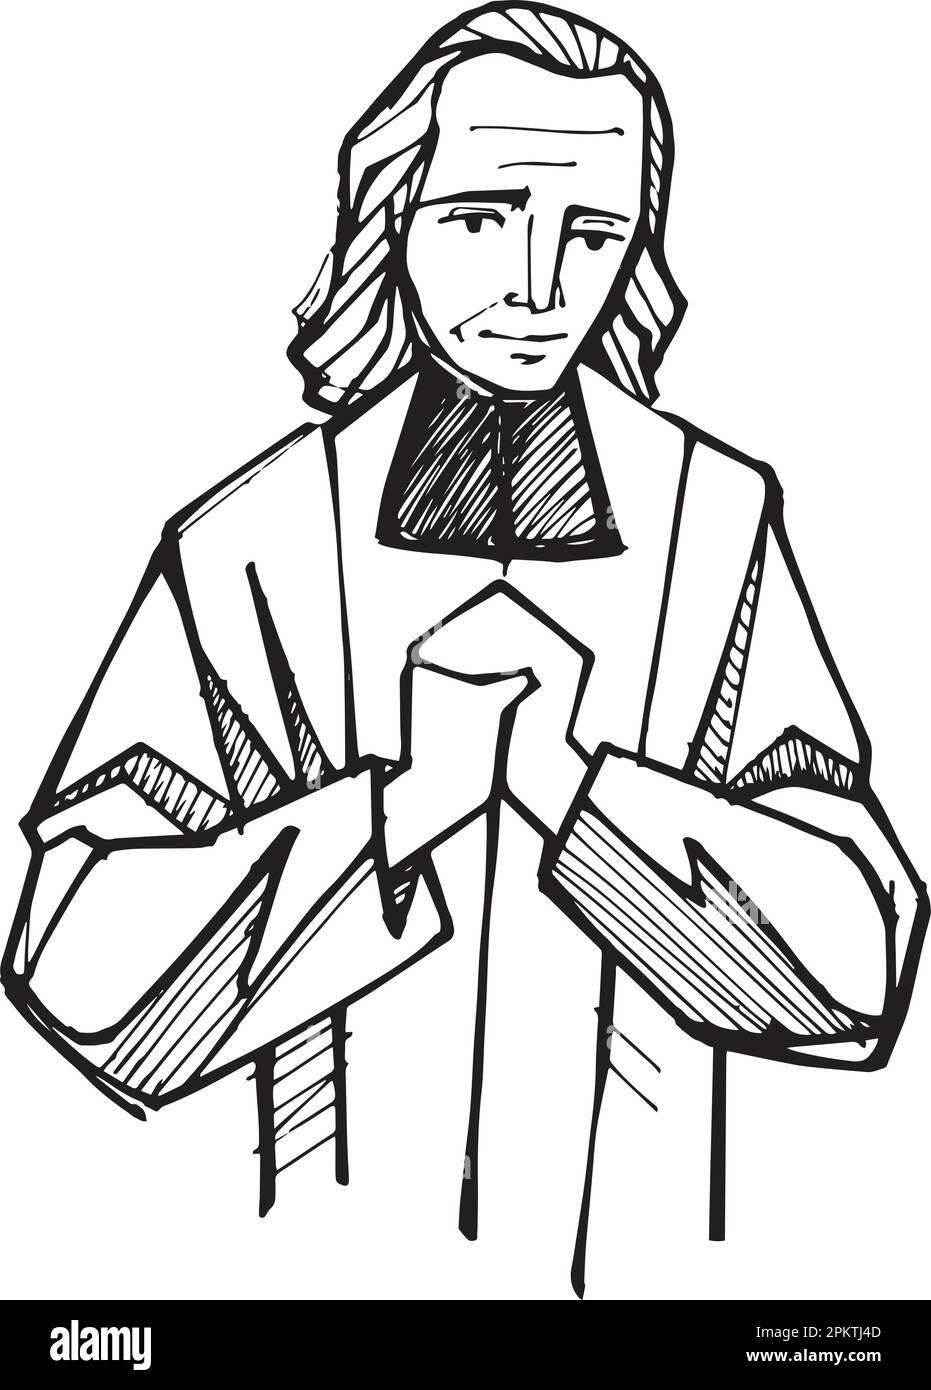 Illustrazione vettoriale disegnata a mano o disegno di St. John Vianney Illustrazione Vettoriale